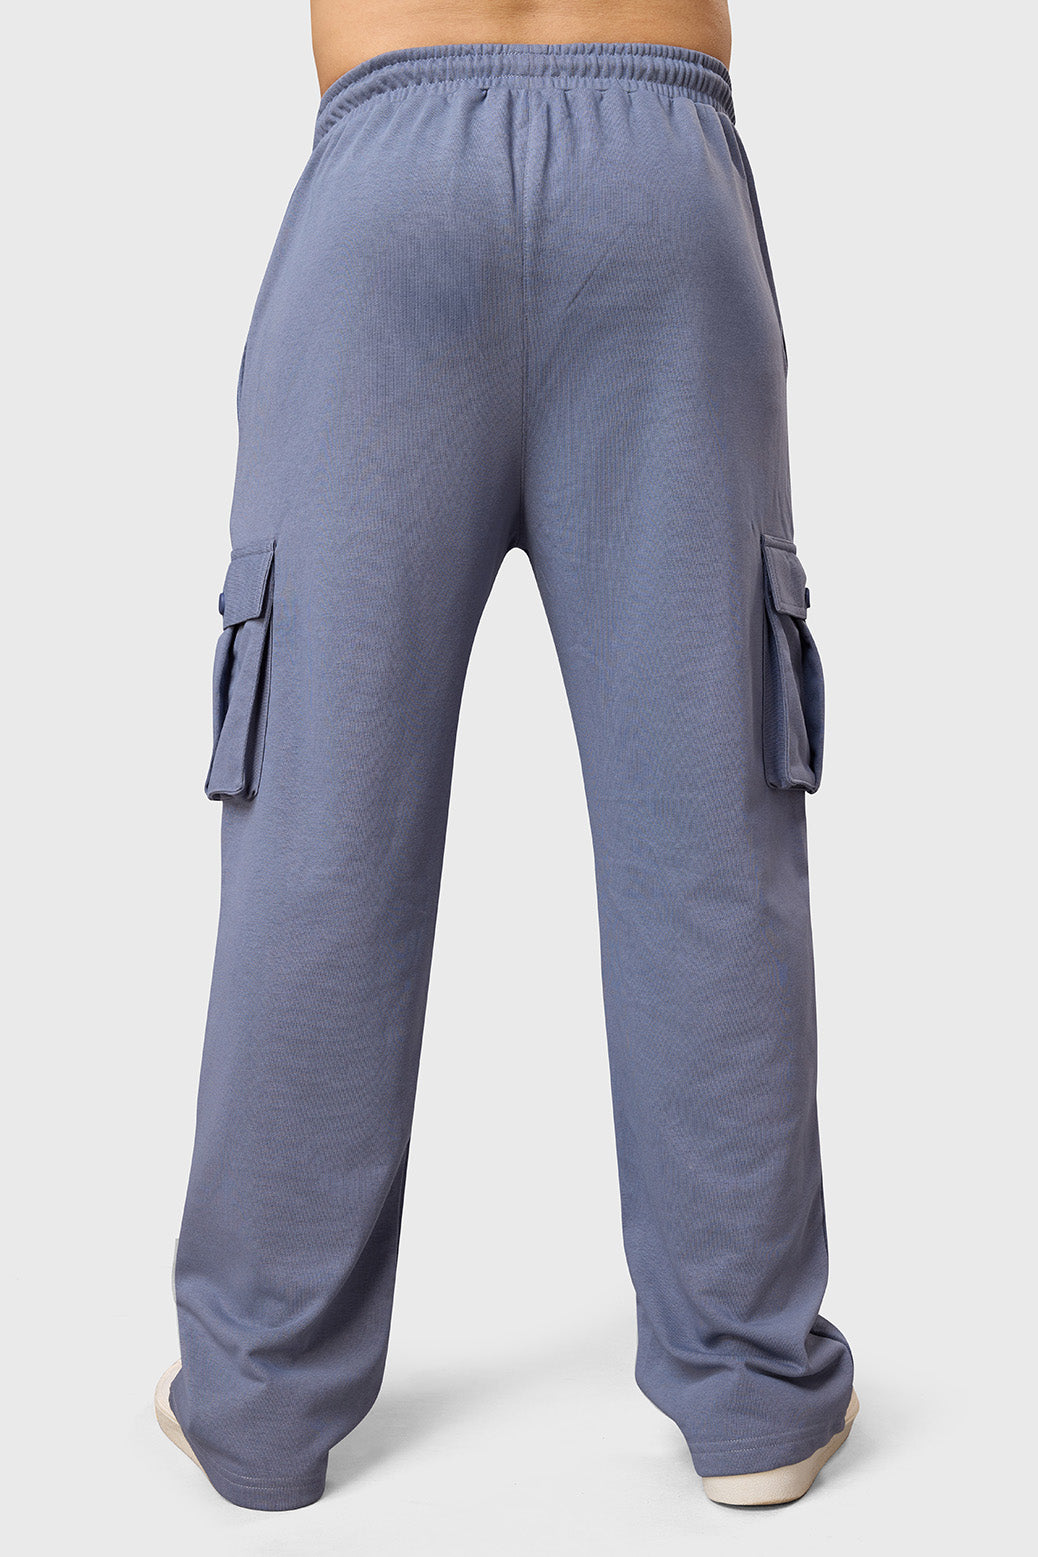 Pinnacle Pocket Pants Grey